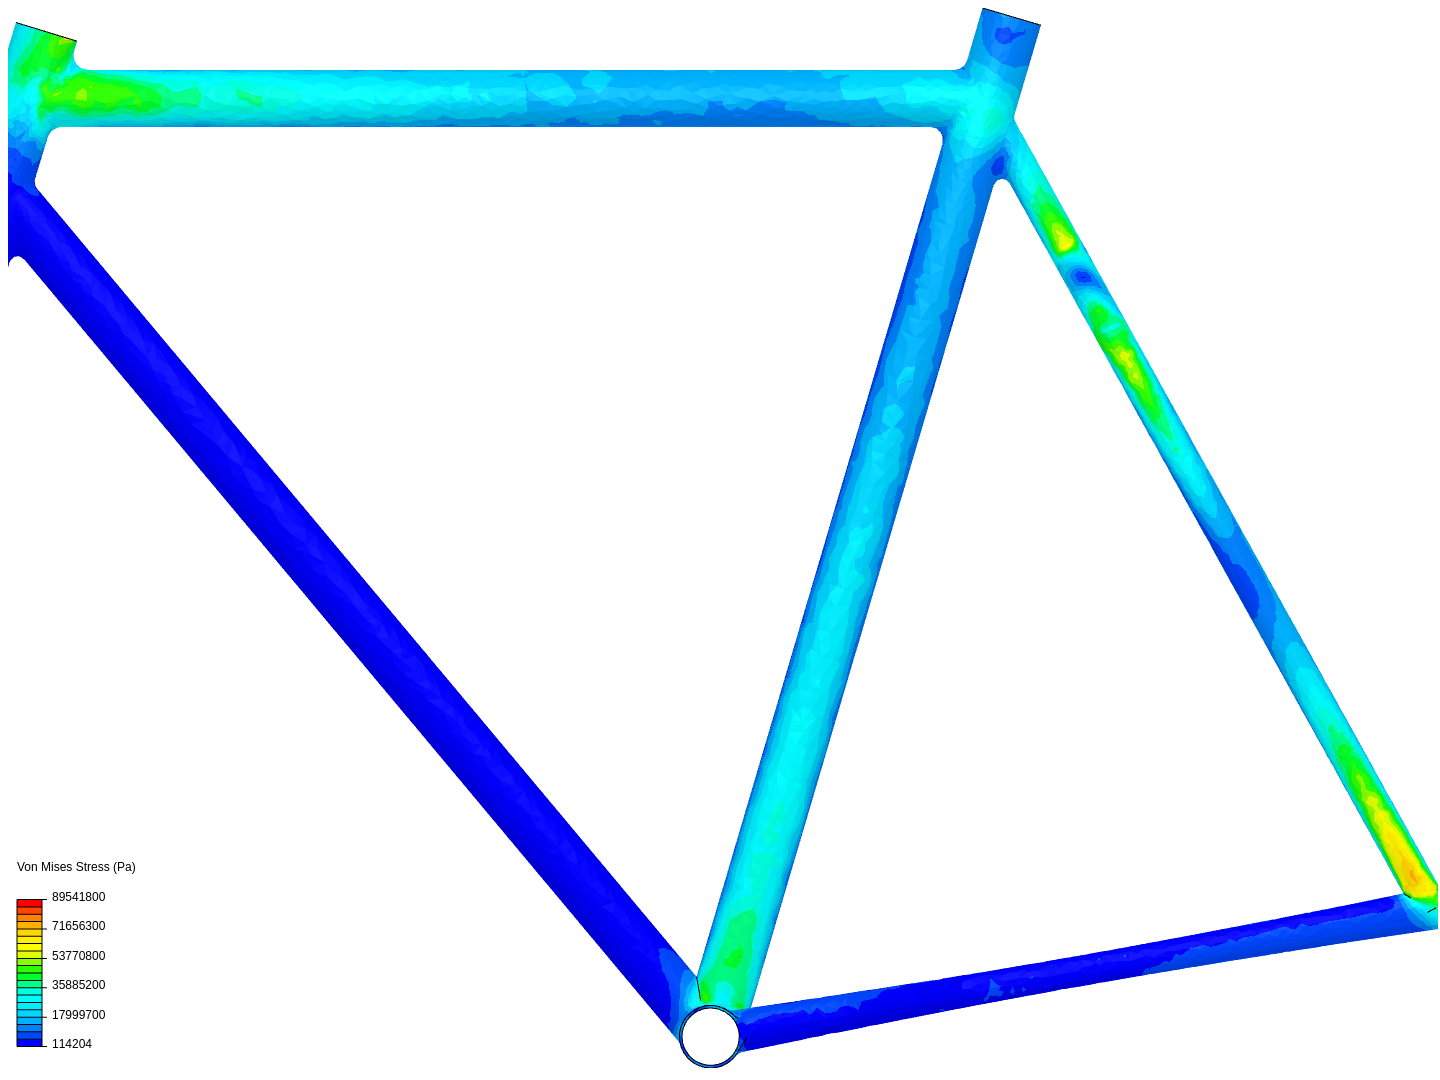 bicycle_stress_analysis image